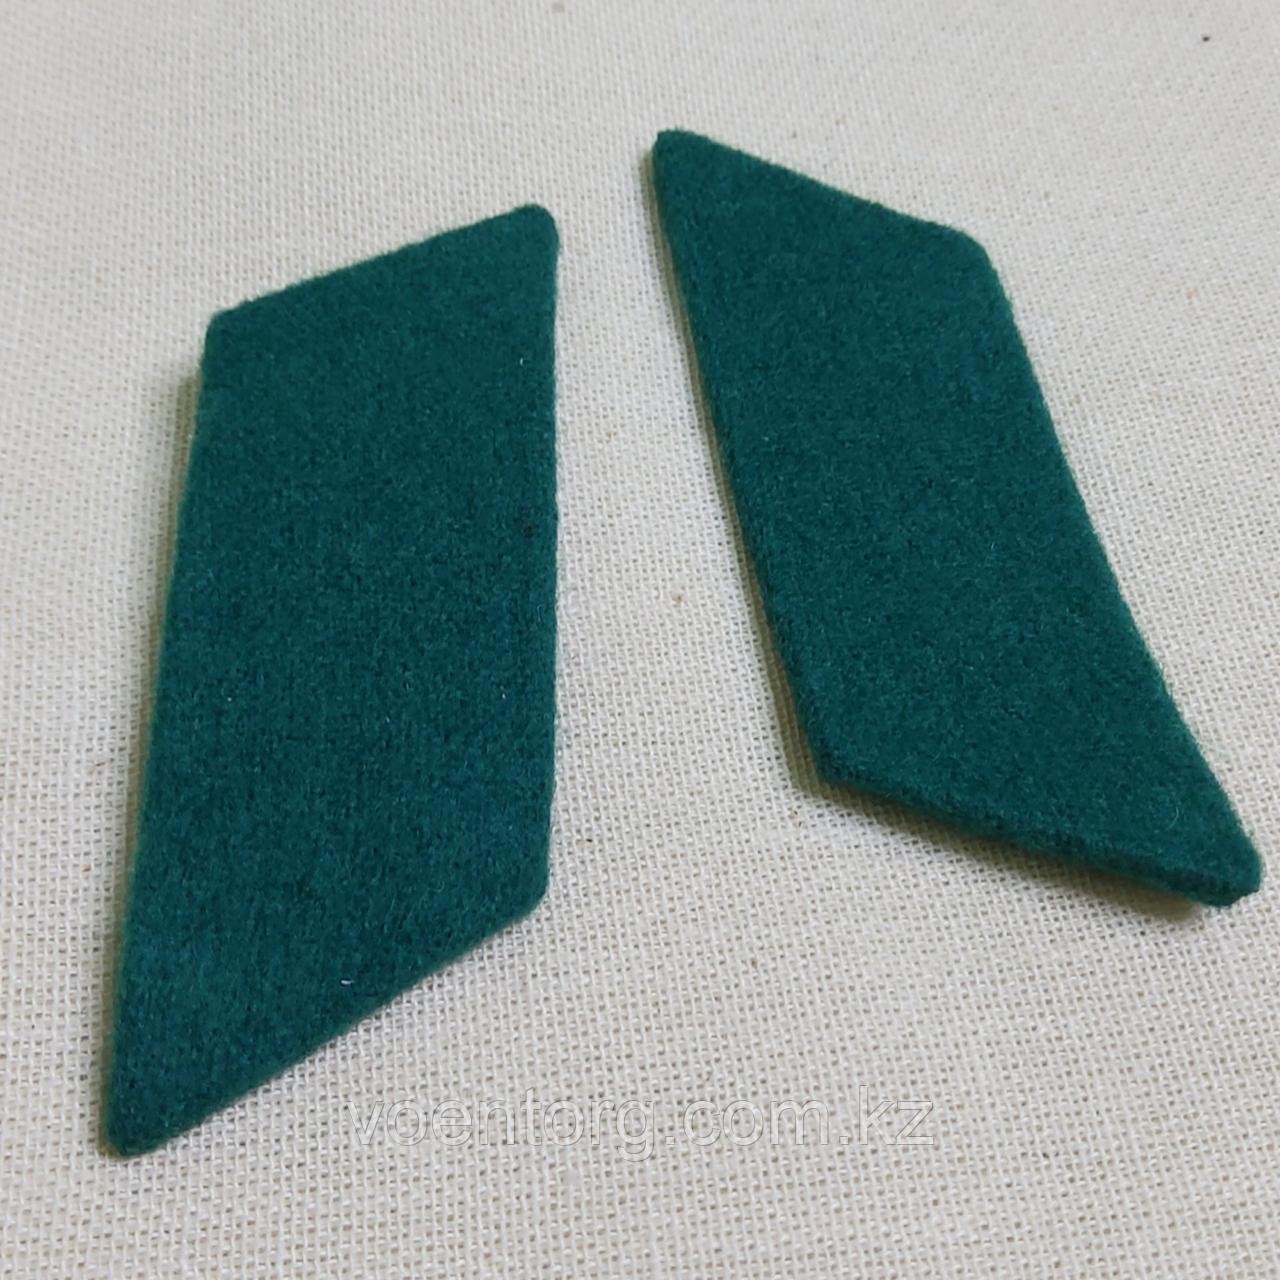 Петлицы на воротник суконные без металлической основы (зеленые)